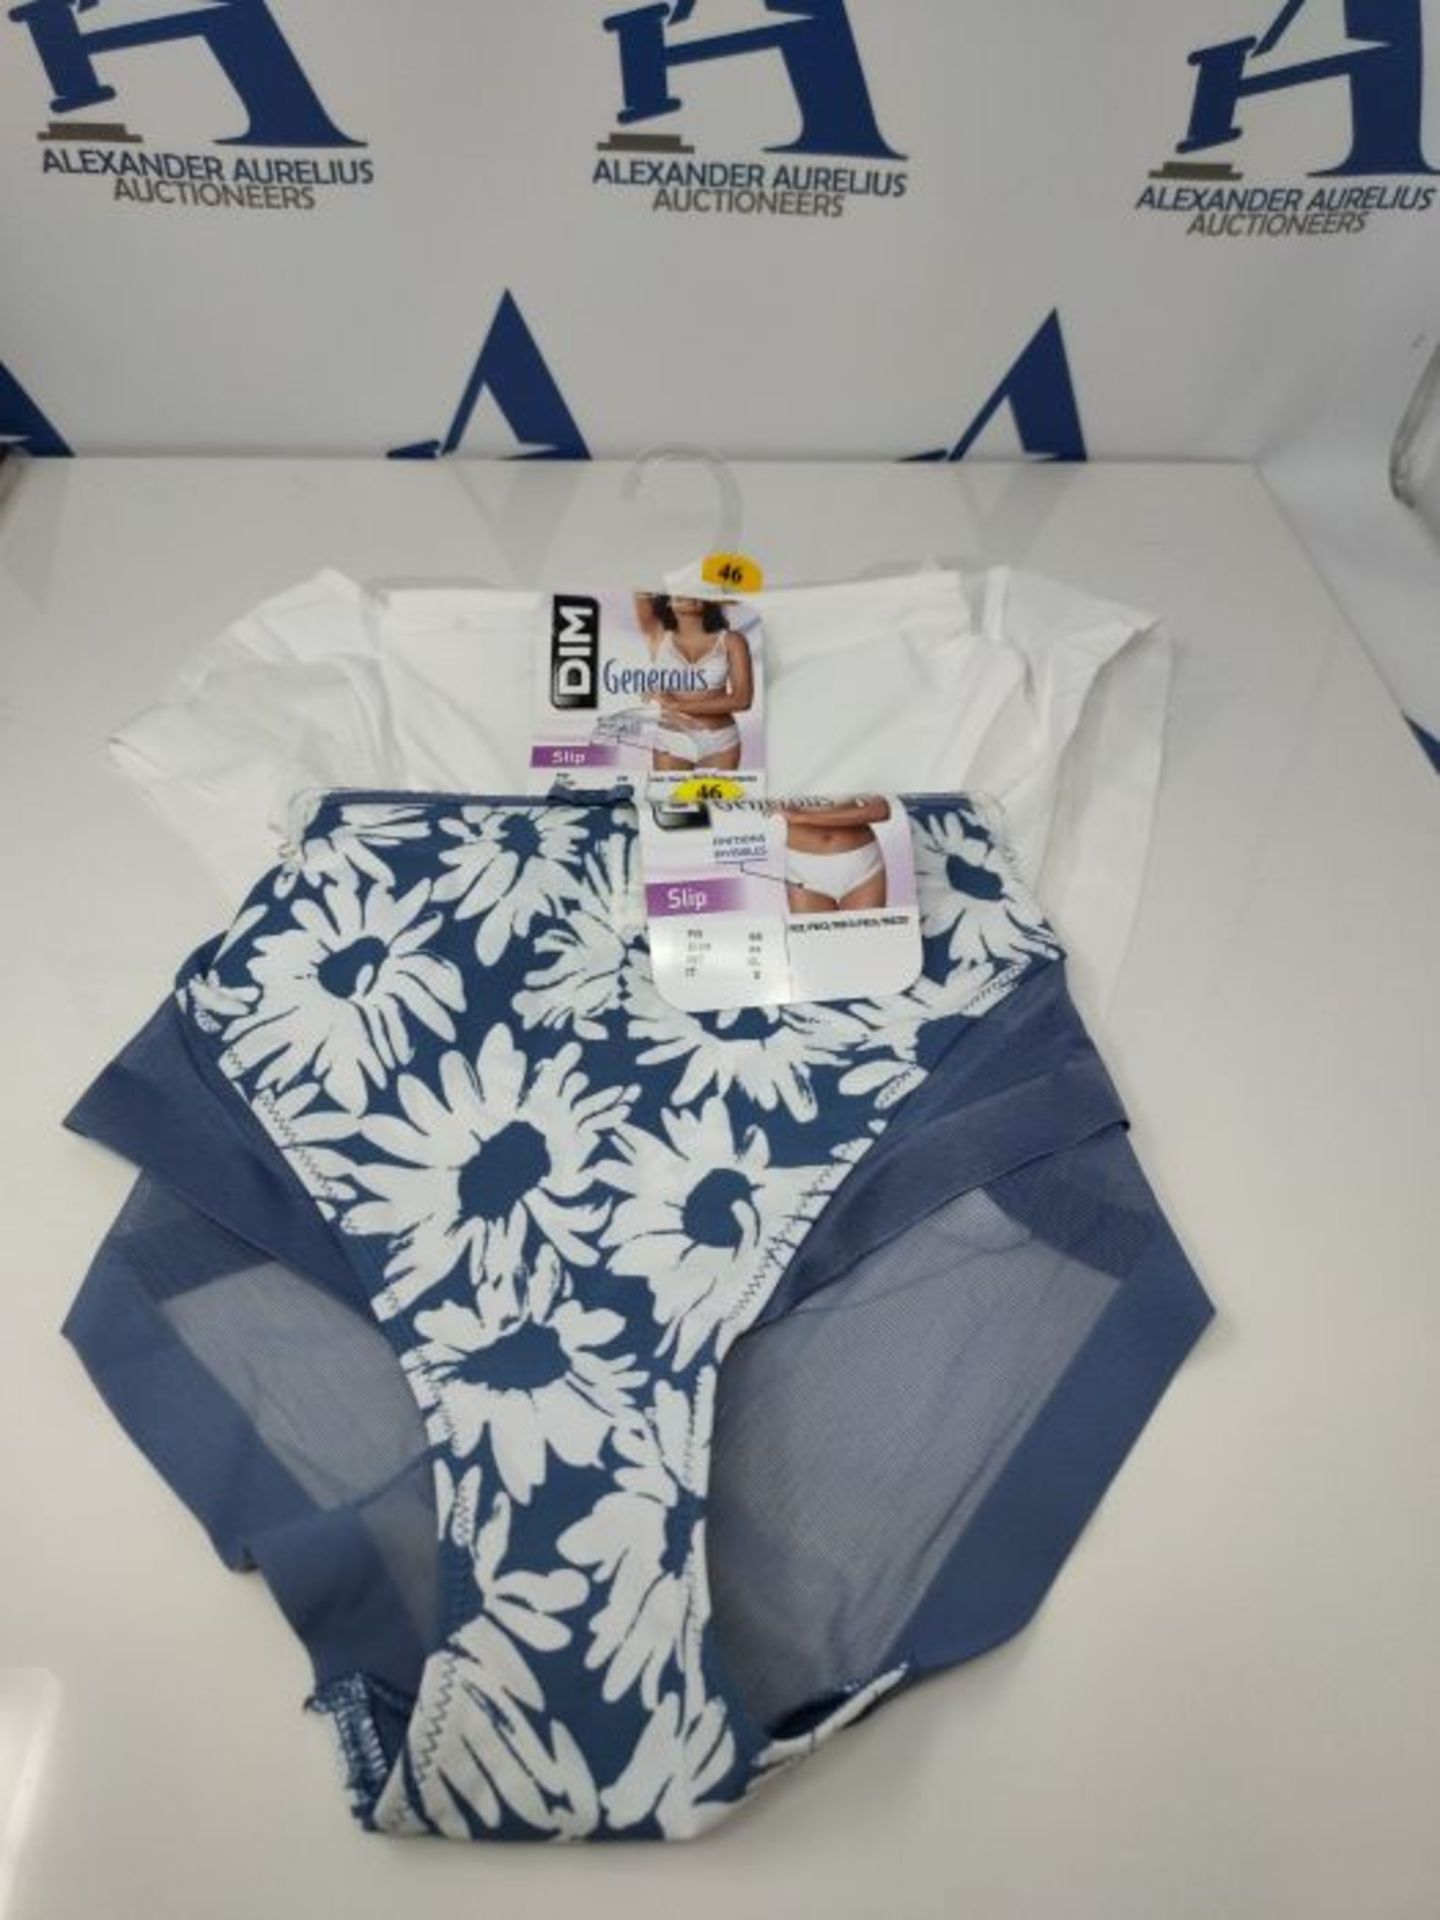 Dim Slip Generous X2 Sous-Vêtement, Imprime Fleuri/Blanc, X-Large Femme - Image 2 of 3